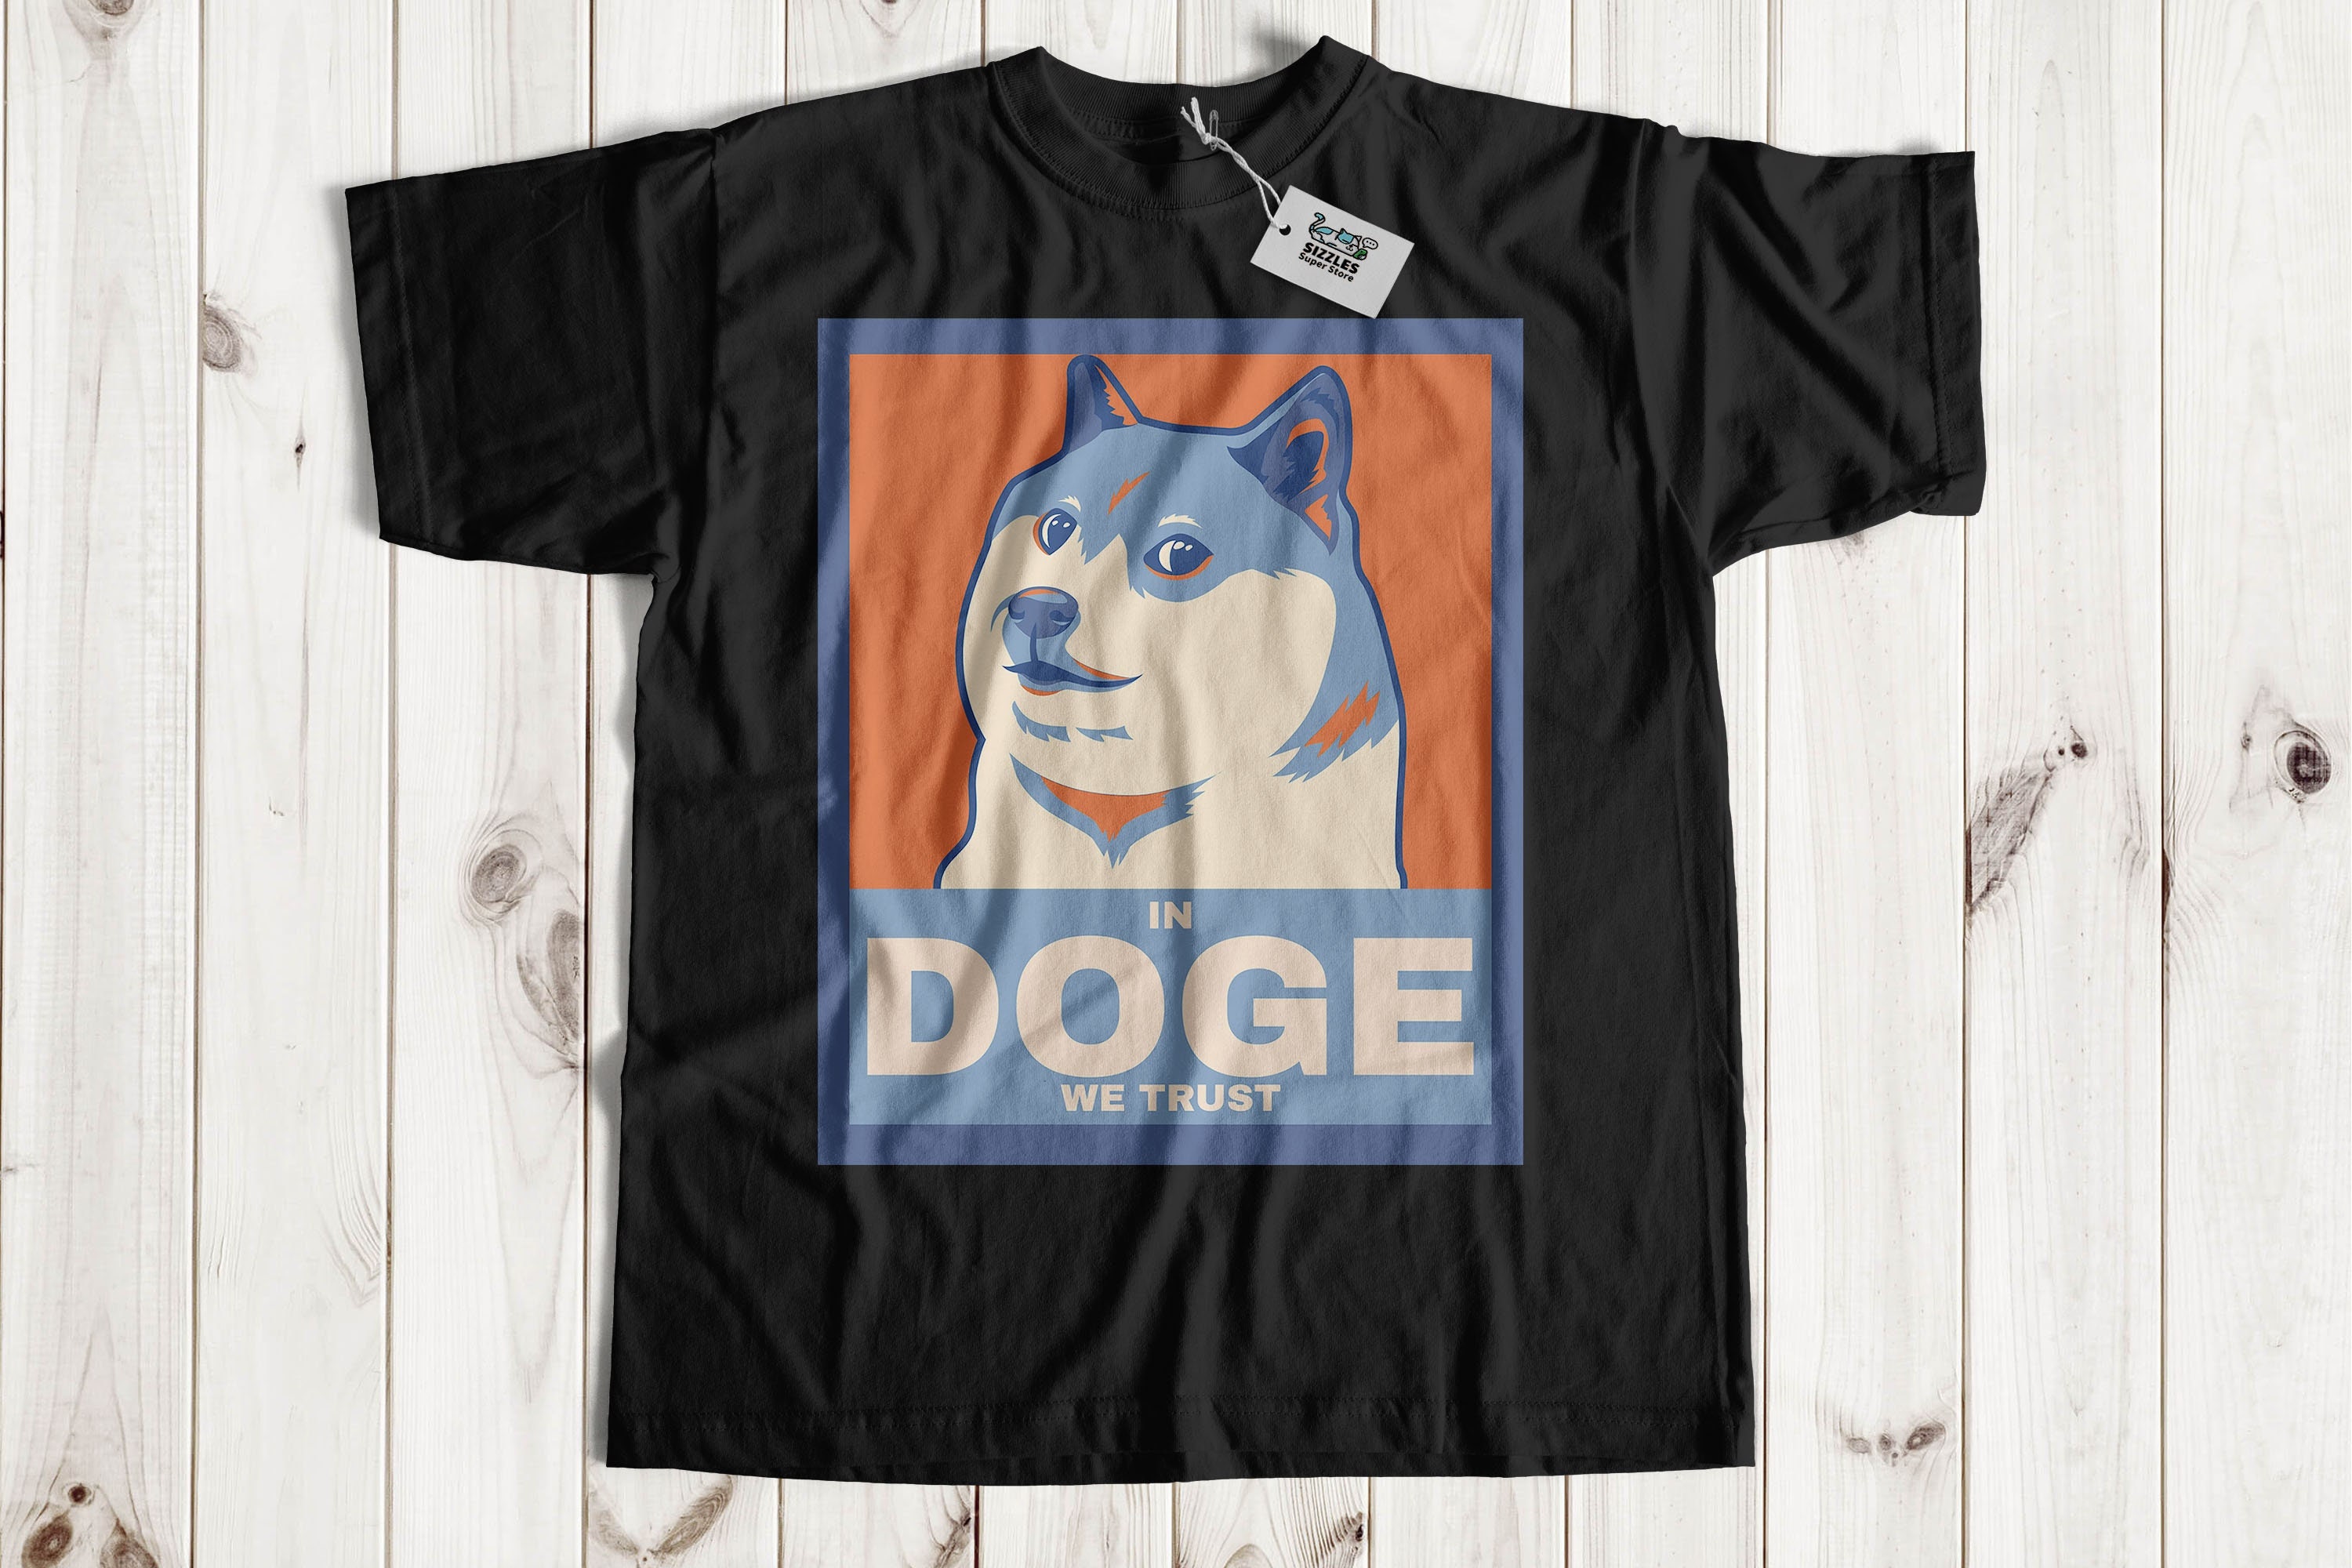 dog #doguedebordeaux #doge #smile #sacado #lomejor - Doge T Shirt